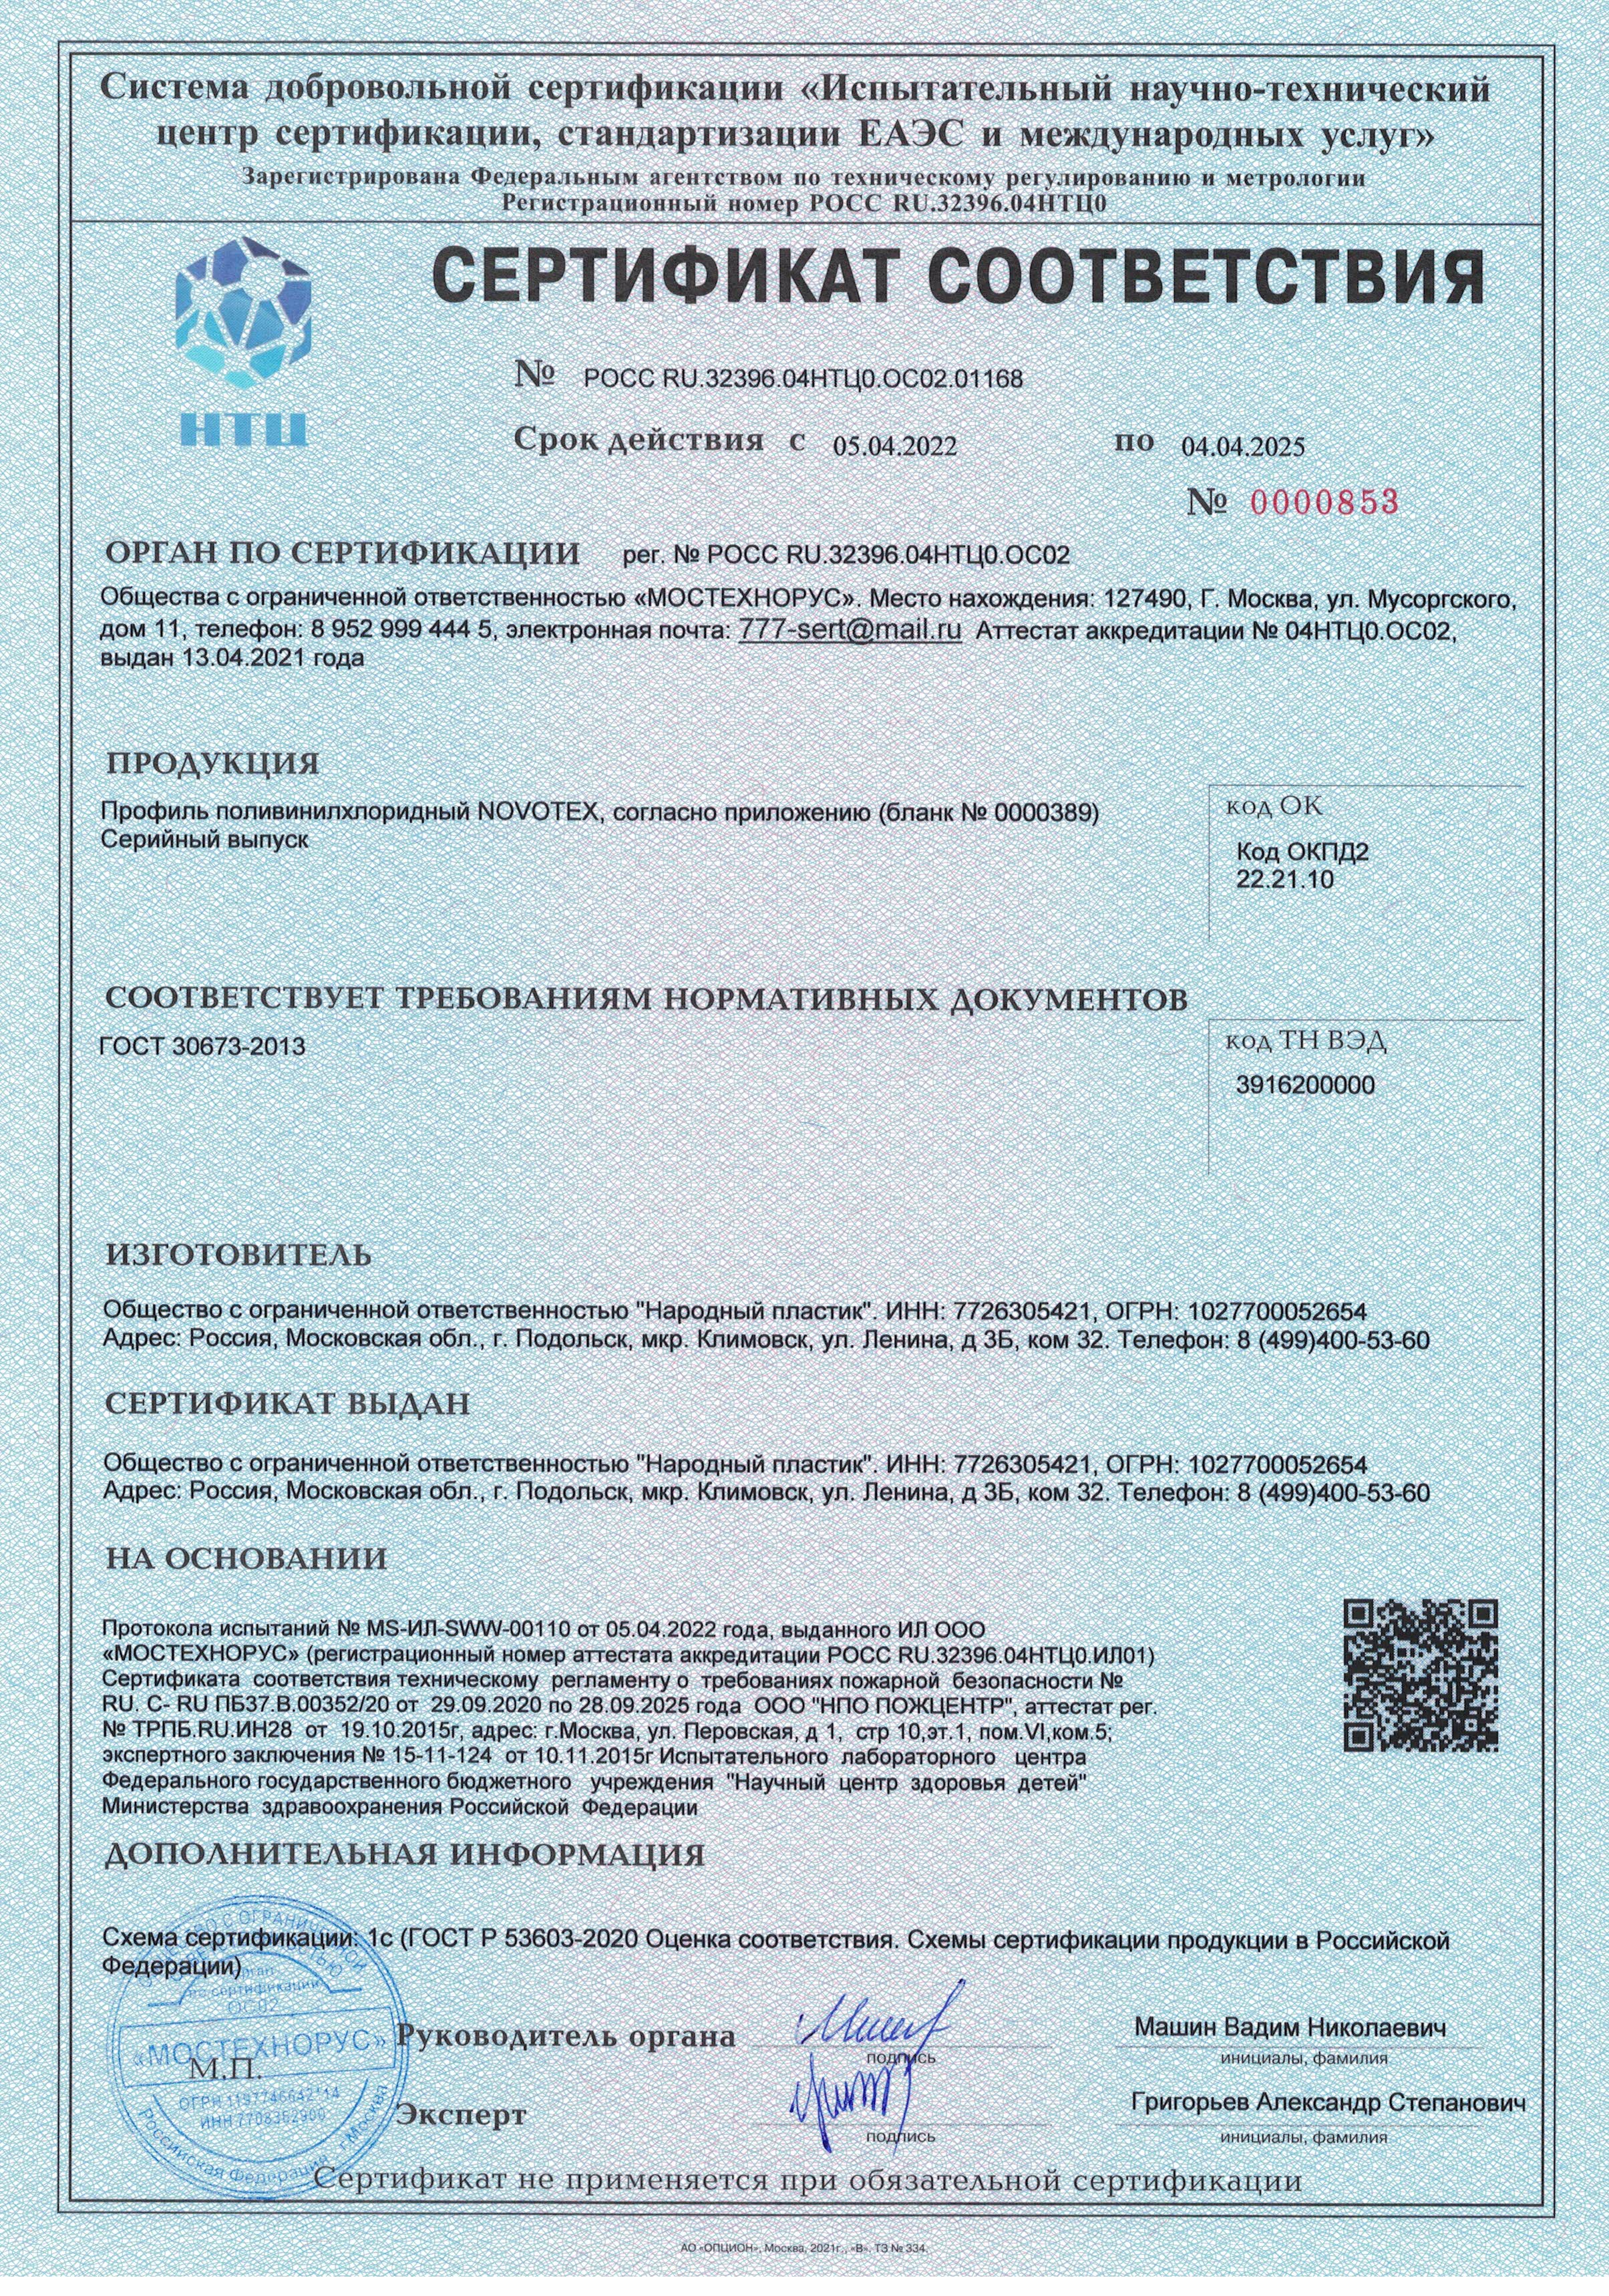 Novotex Сертификат соответсвия - 04.04.25